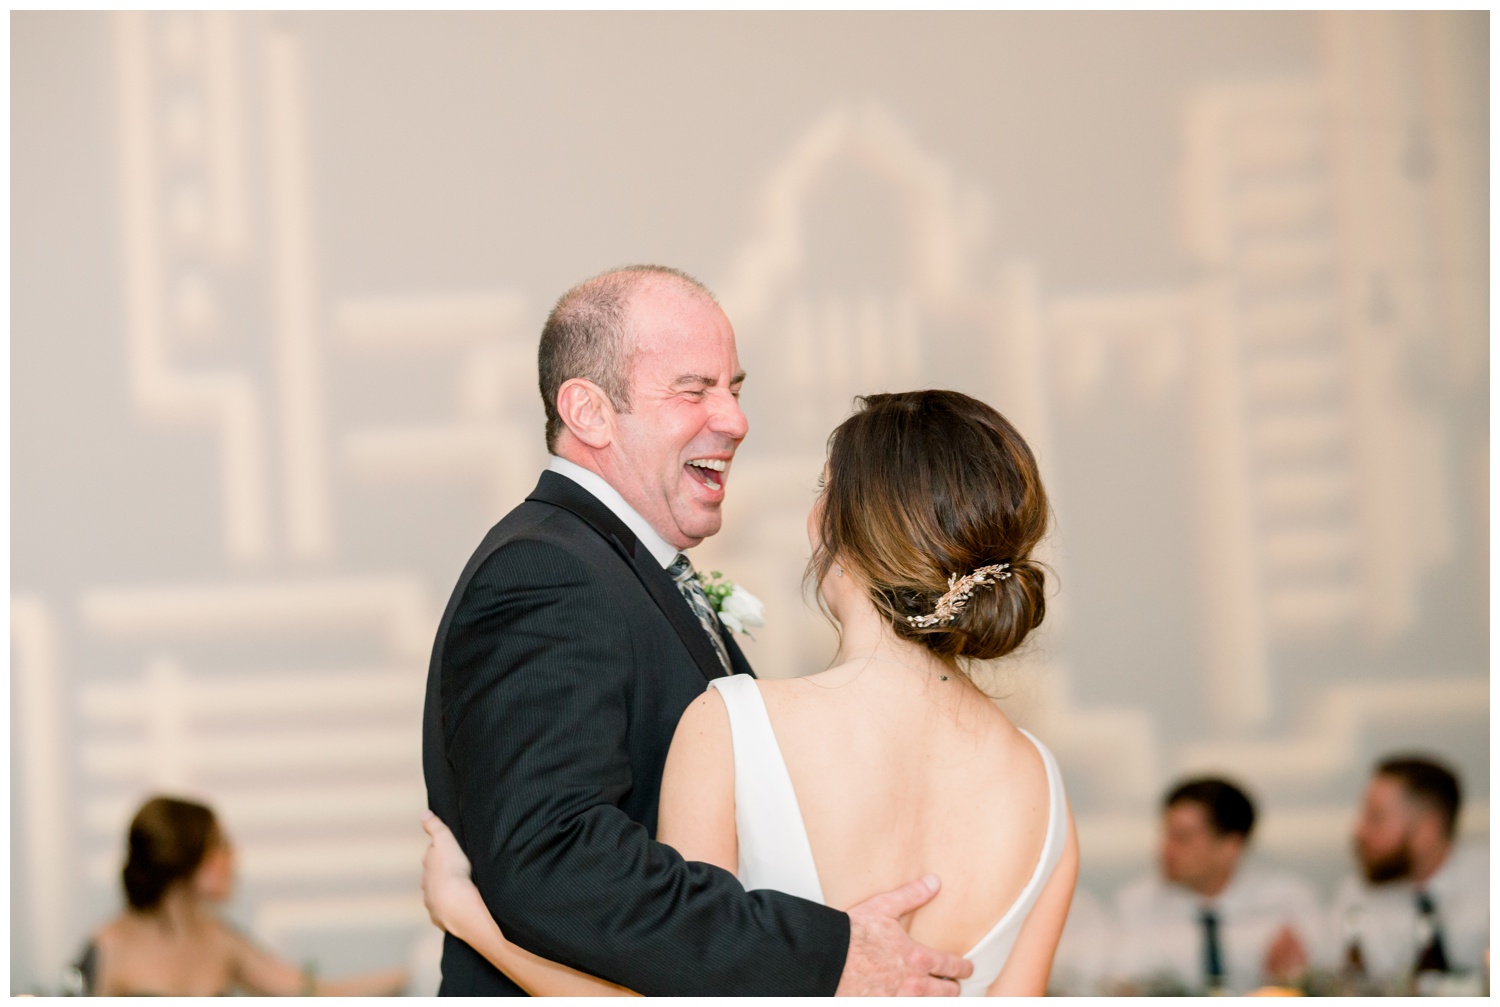 Father Daughter Dance - The Center Cincinnati Wedding Reception